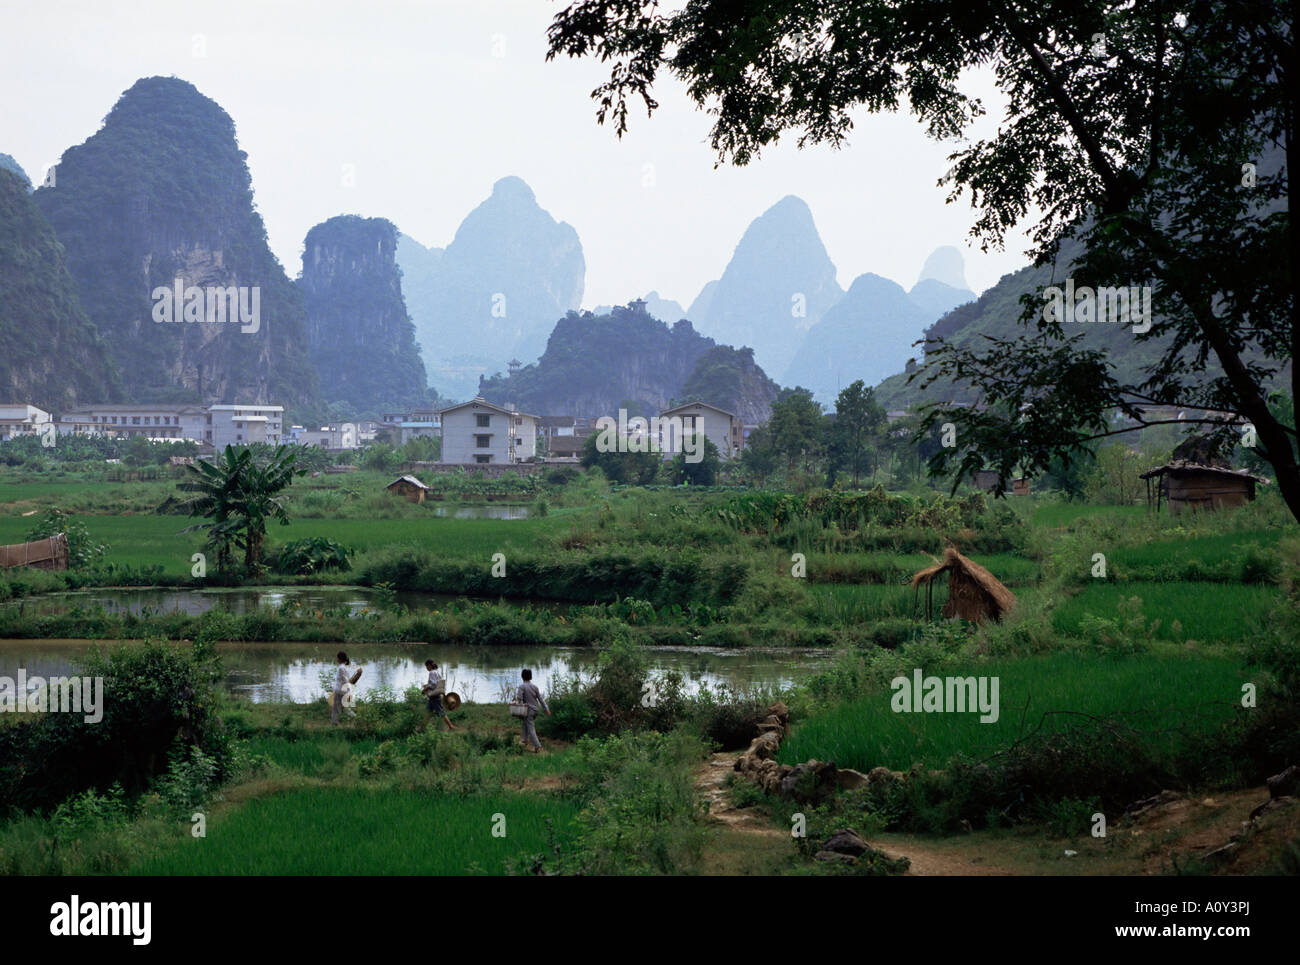 Ackerland am Rande der Stadt unter dem Kalkstein erhebt sich Yangshuo Guangxi China Asien Stockfoto